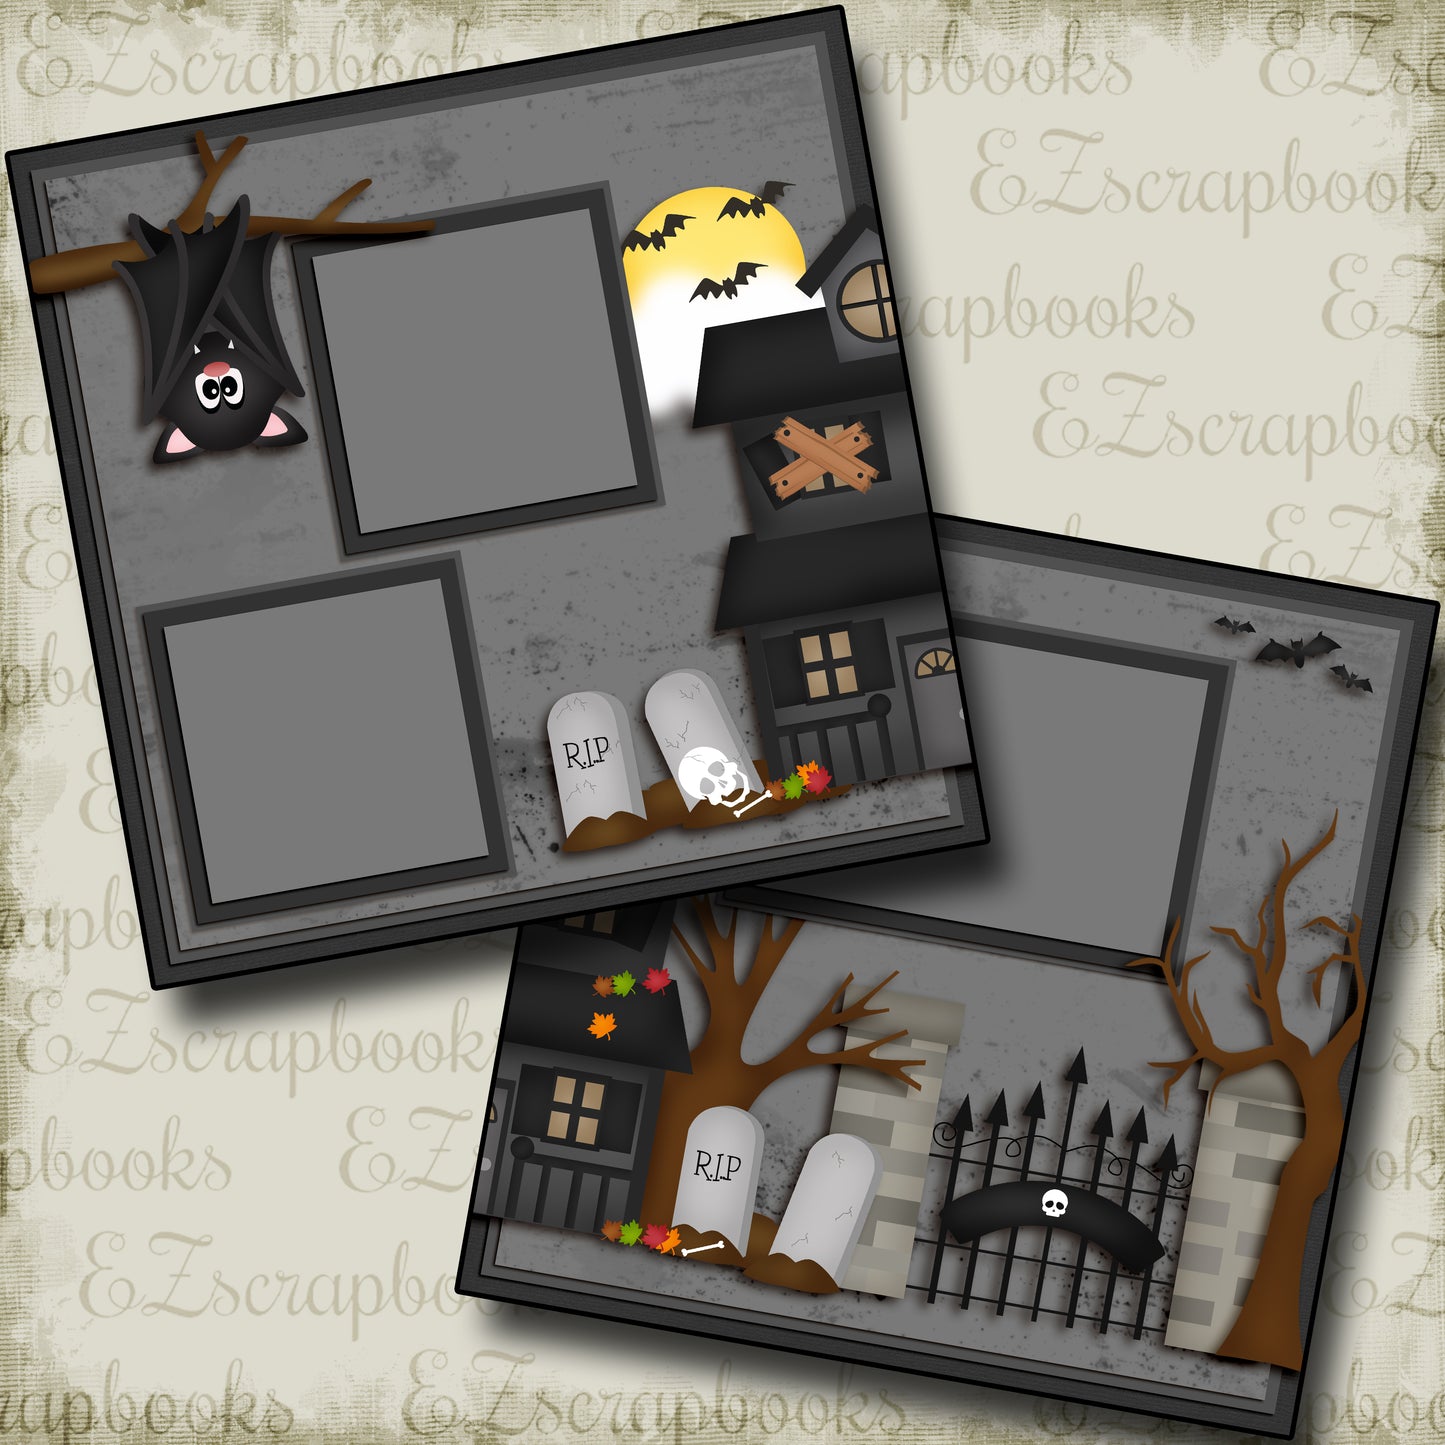 Spooky Nights - 3870 - EZscrapbooks Scrapbook Layouts Halloween